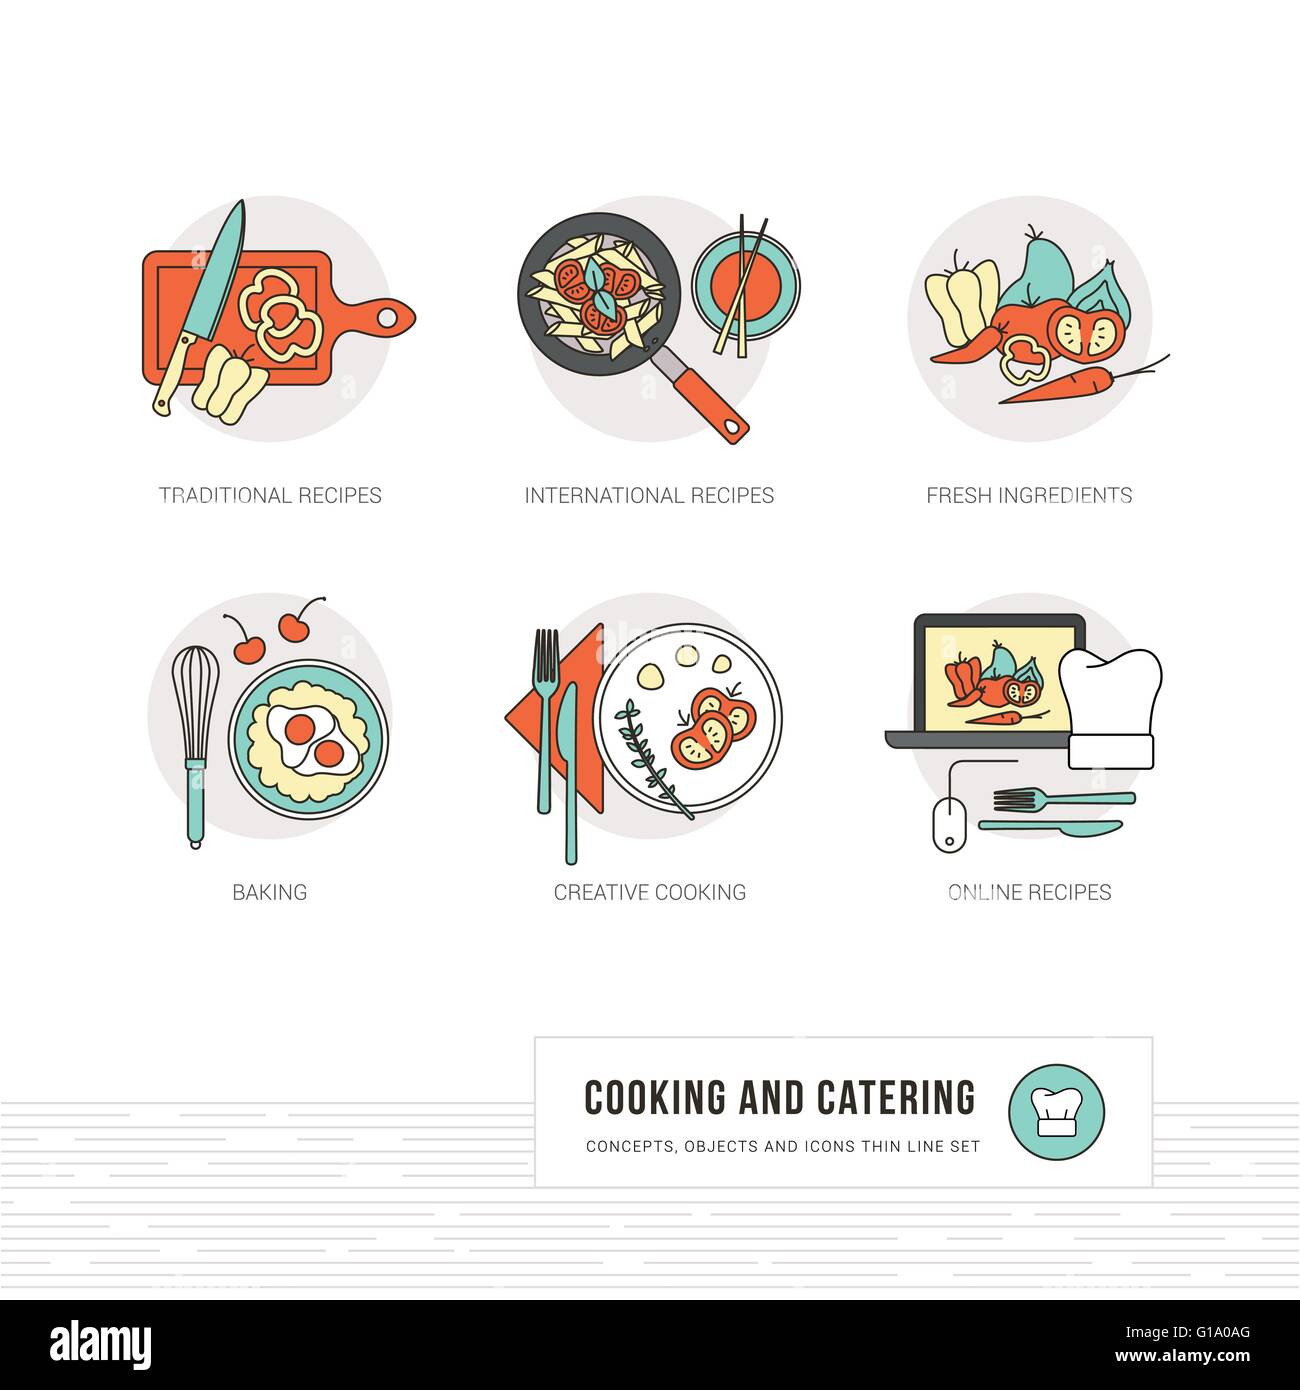 La cuisson des aliments, et des concepts internationaux et des recettes traditionnelles et des ingrédients, fine ligne d'objets et icônes Illustration de Vecteur